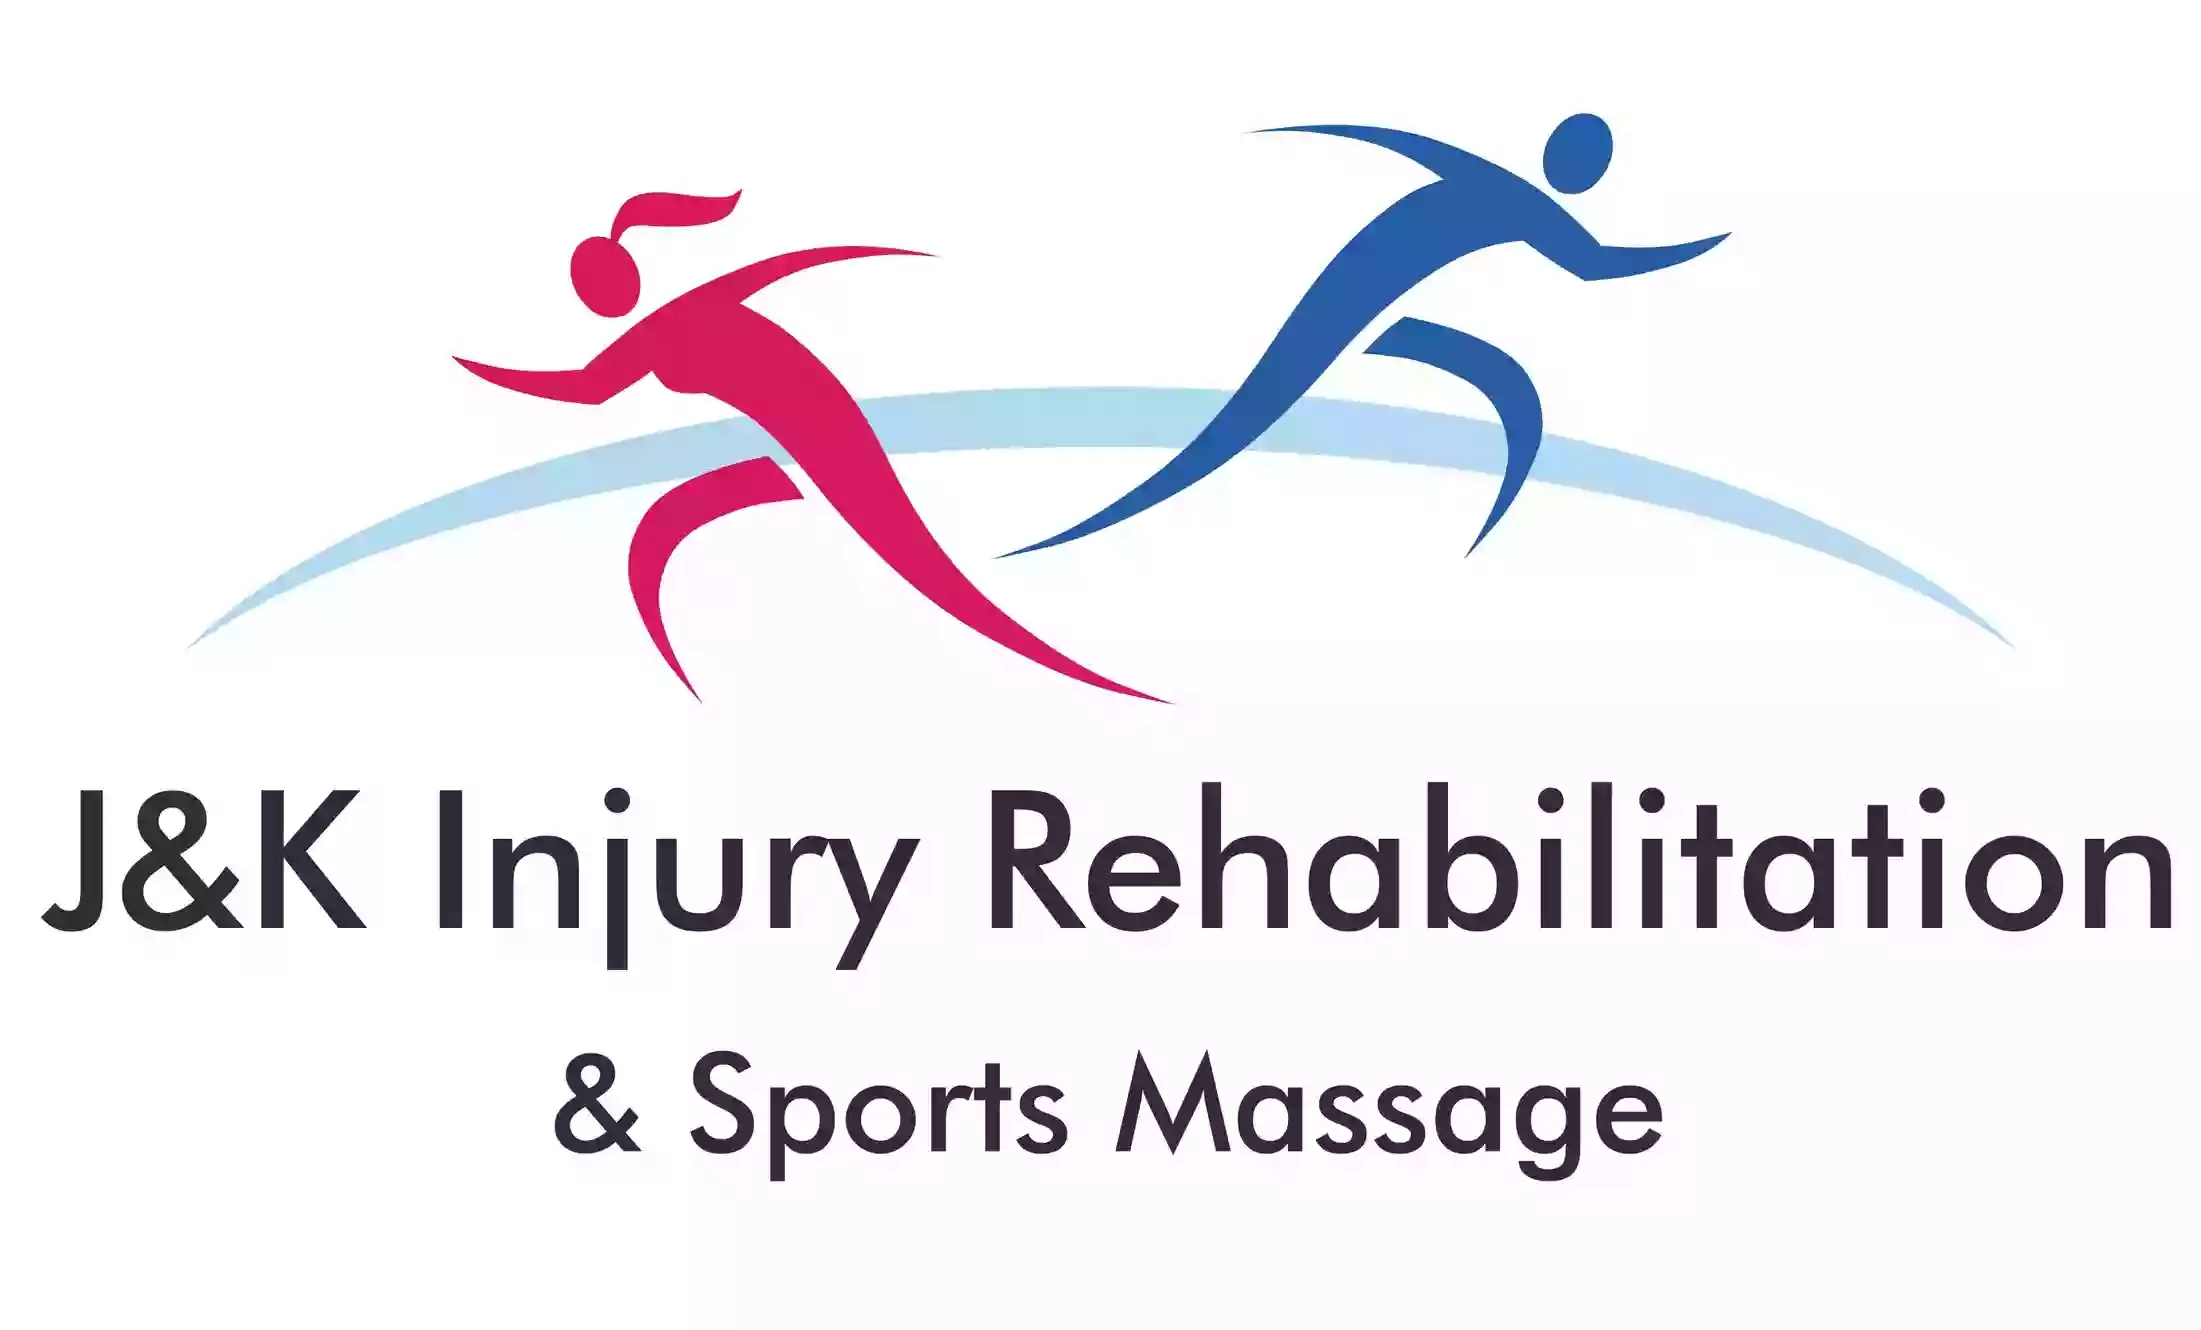 J&K Injury Rehabilitation